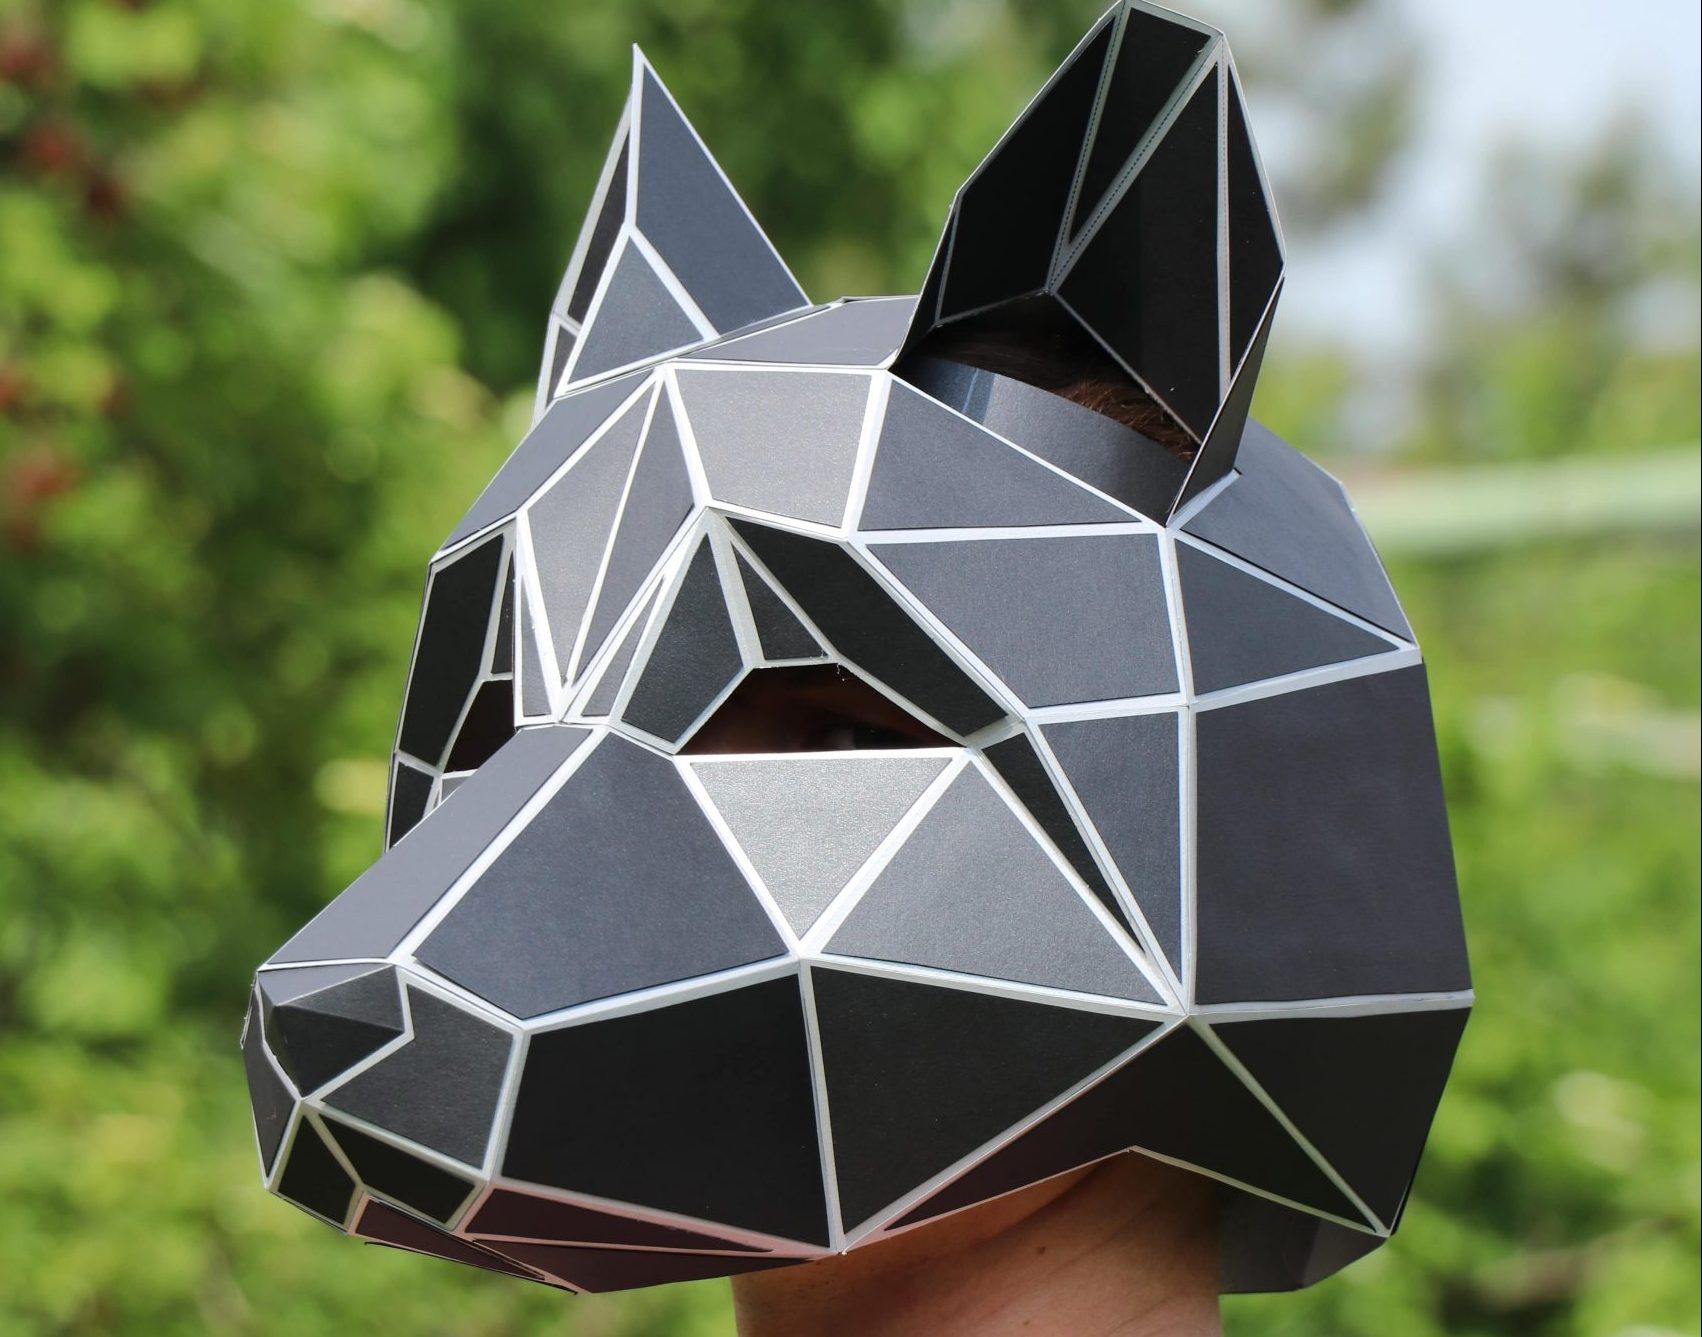 Шаг 4: Дополнительные идеи для украшения маски волка